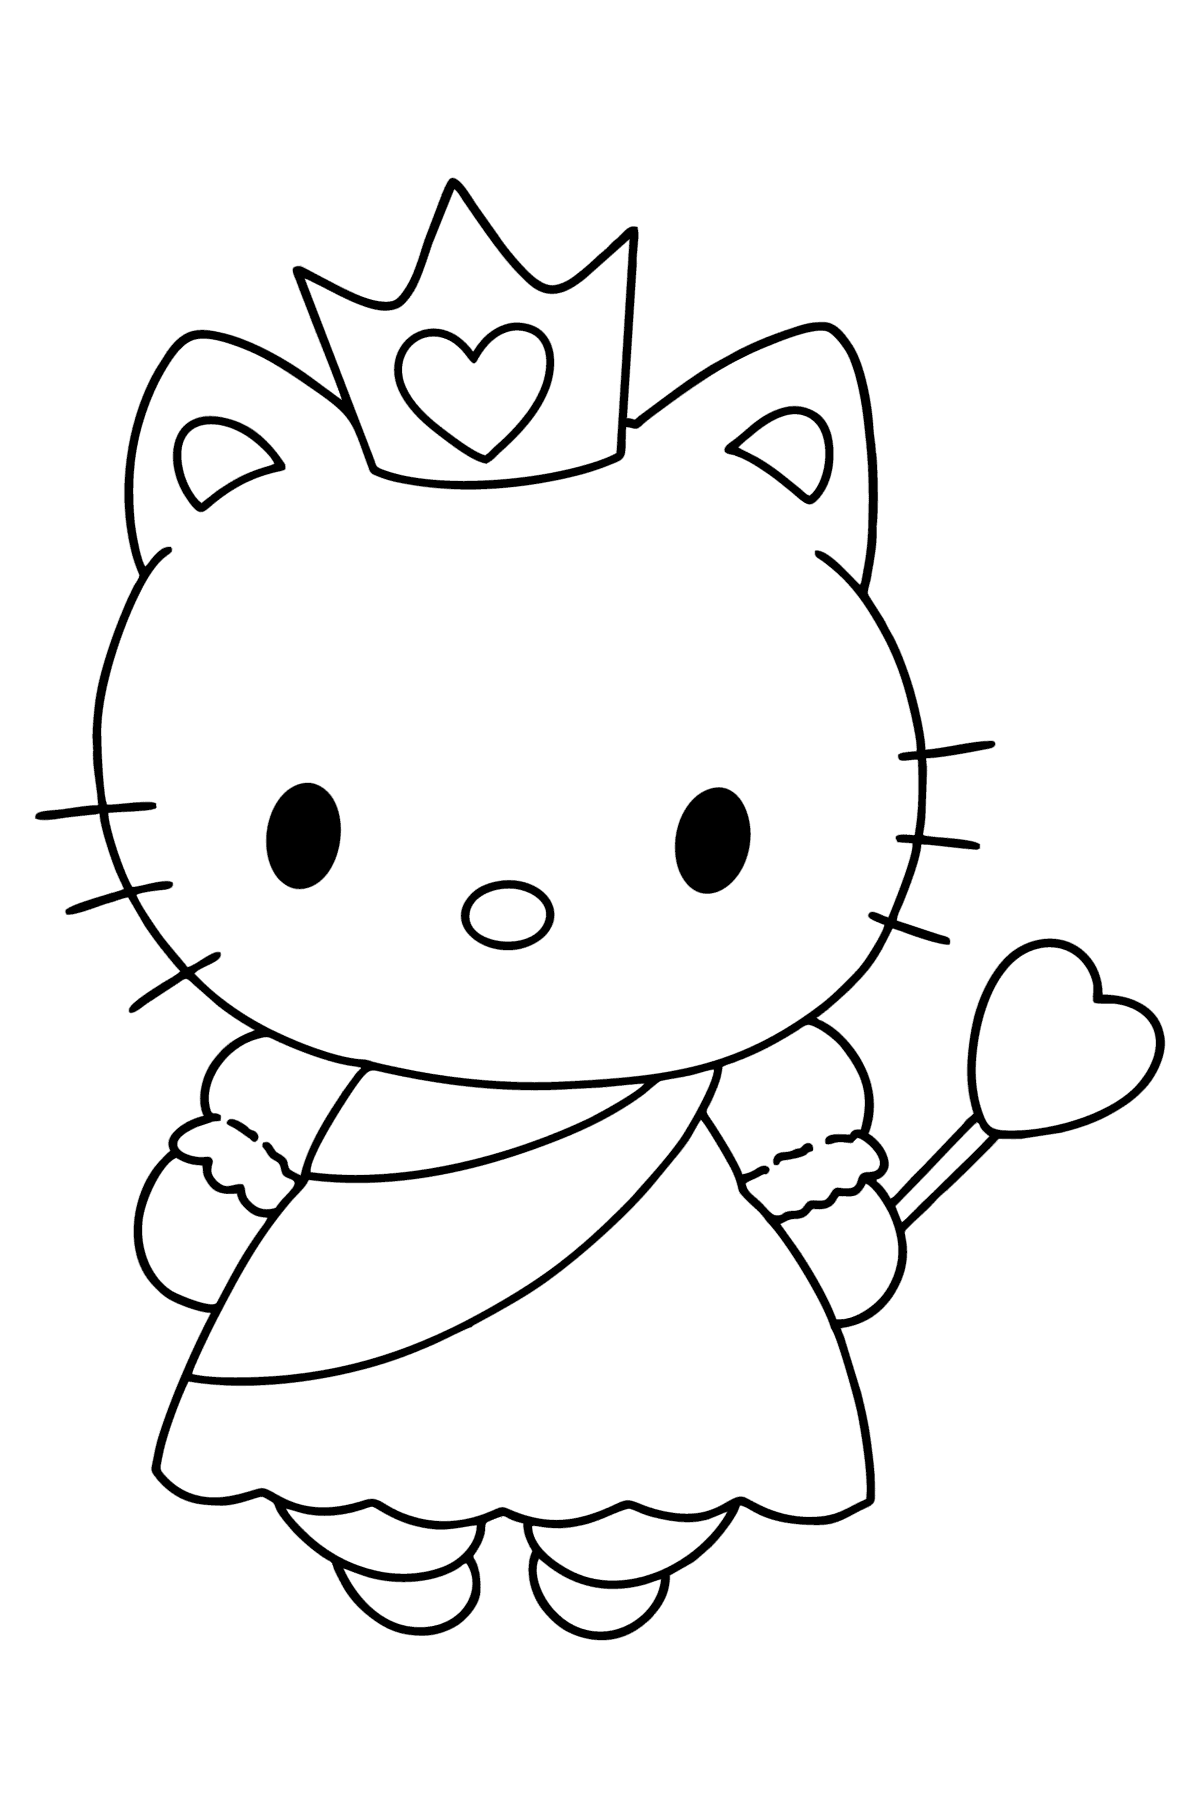 Boyama sayfası Hello Kitty bir prenses - Boyamalar çocuklar için